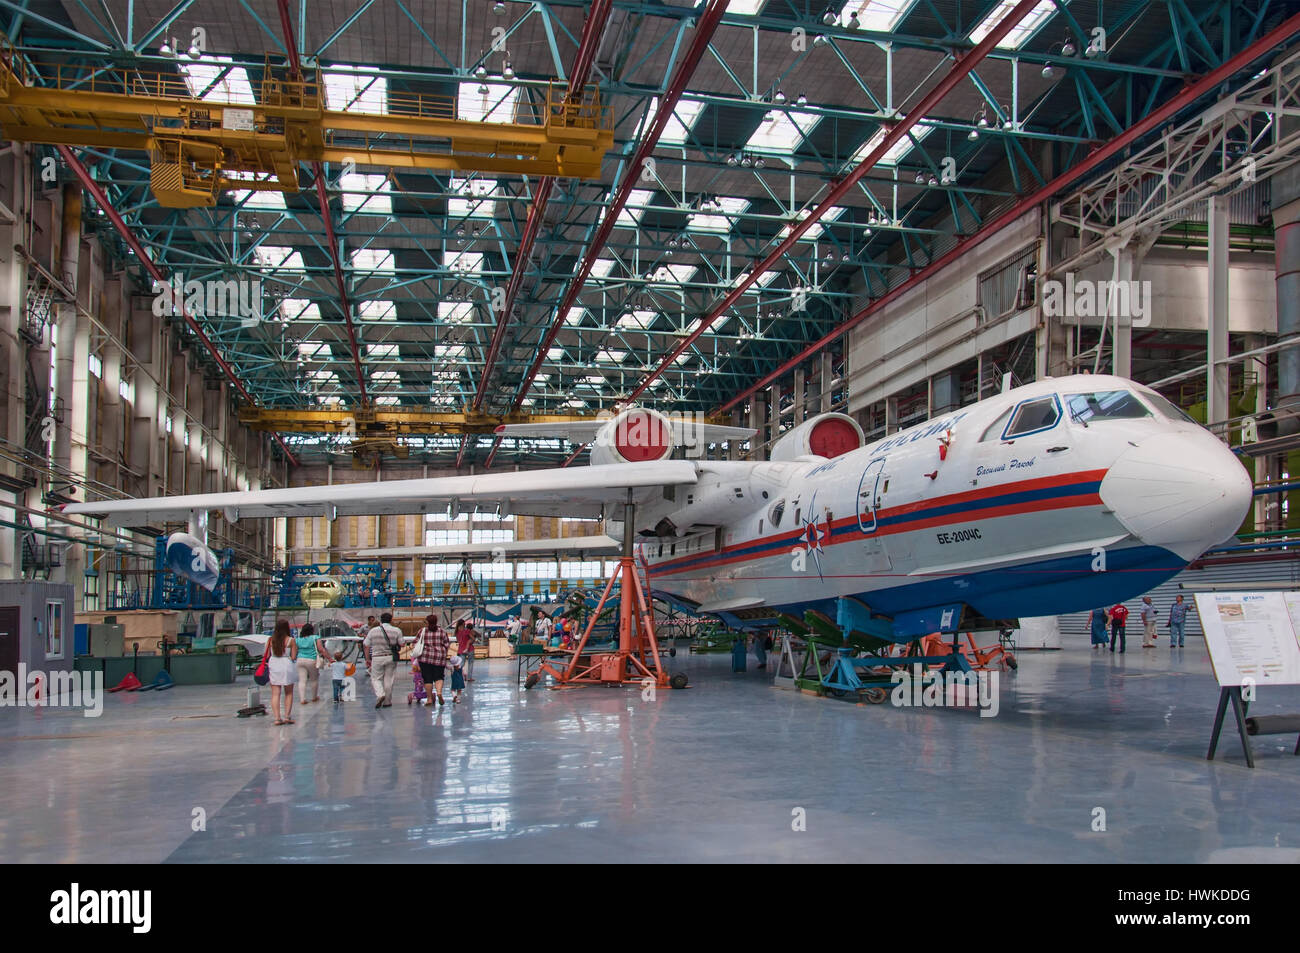 Wasserflugzeuge werden-200ChC, Bau, Taganrog, Russland, 18. Mai 2013. Flugzeugwerk, sind diese Flugzeuge fliegen bereits. Stockfoto